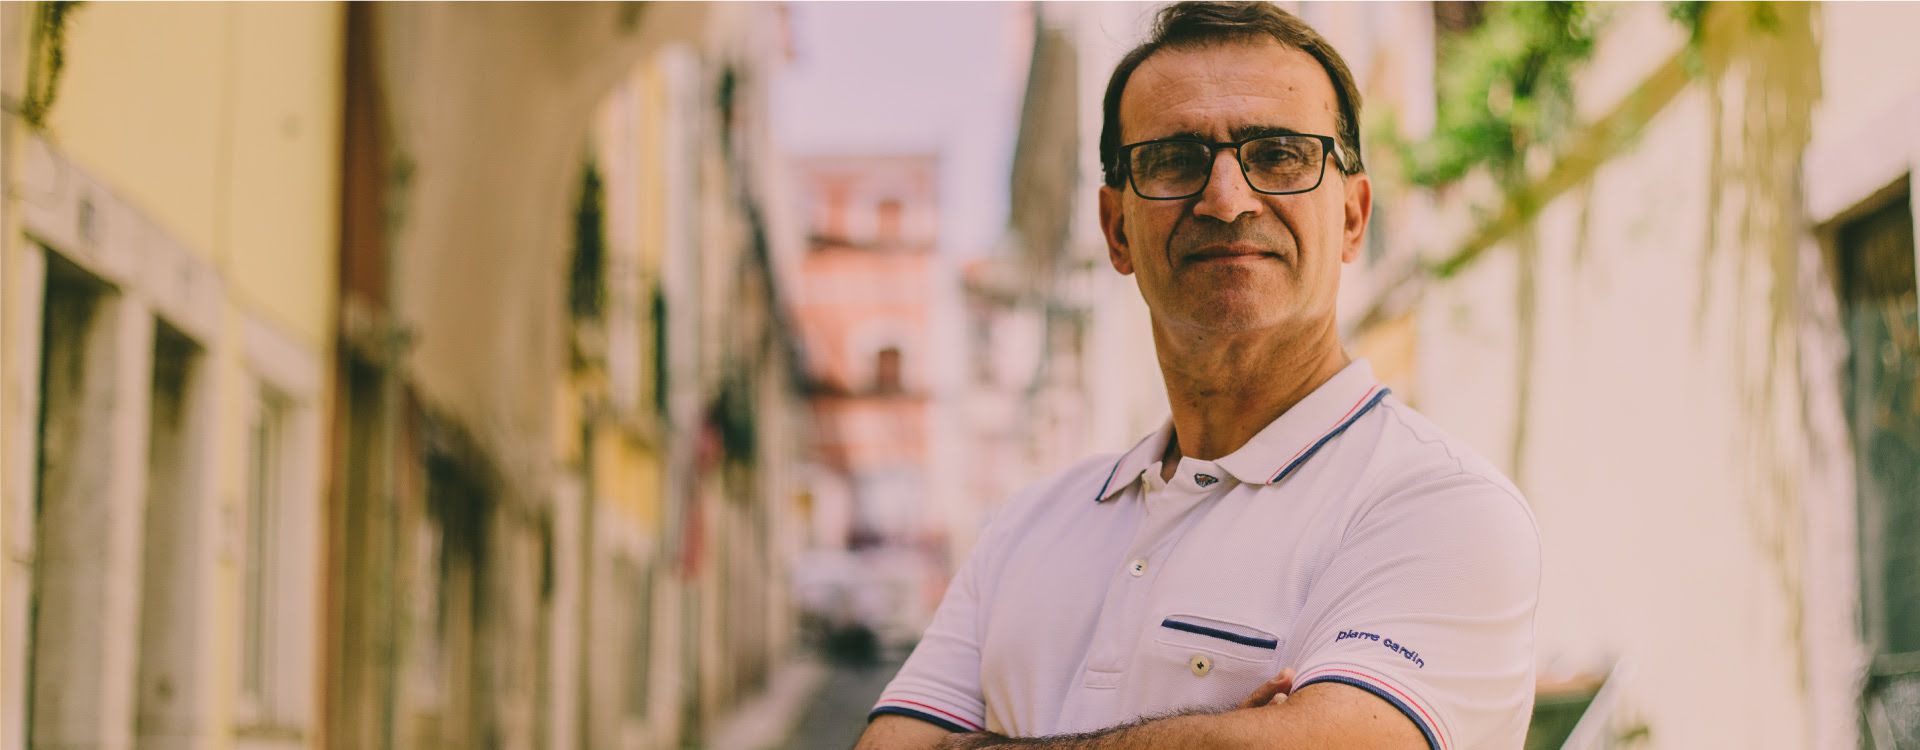 Joaquim Ribeiro, sobre cuidadores informais: “Estes cuidados são prestados por um familiar, mas também dizem respeito ao Estado”